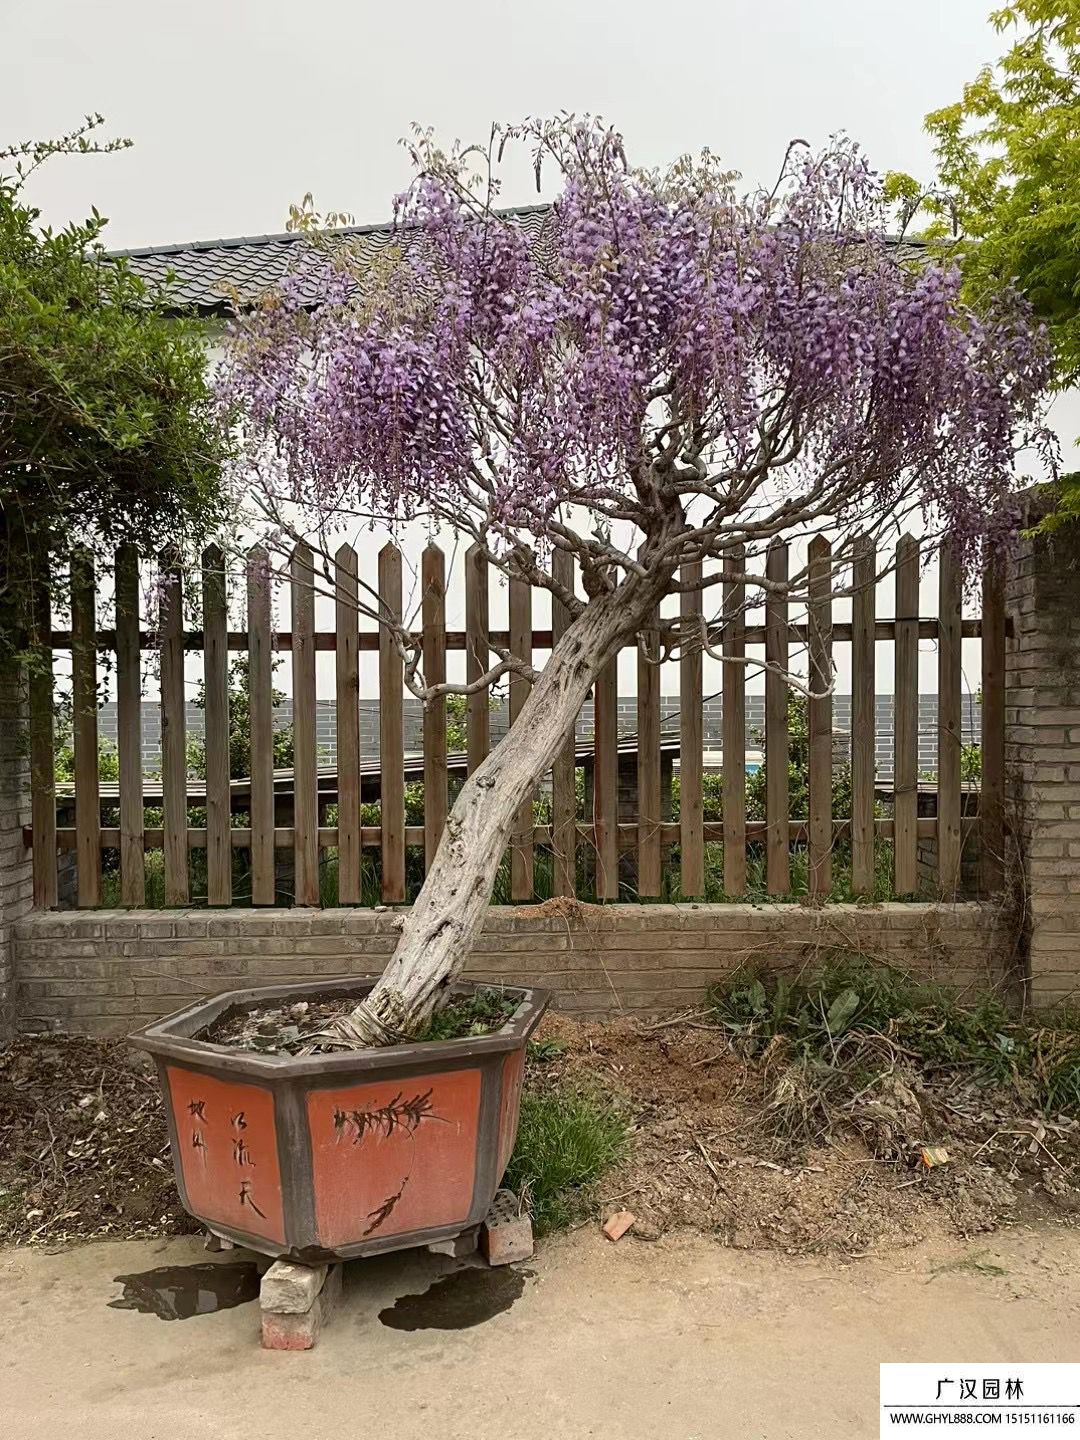 紫藤盆景极品图片